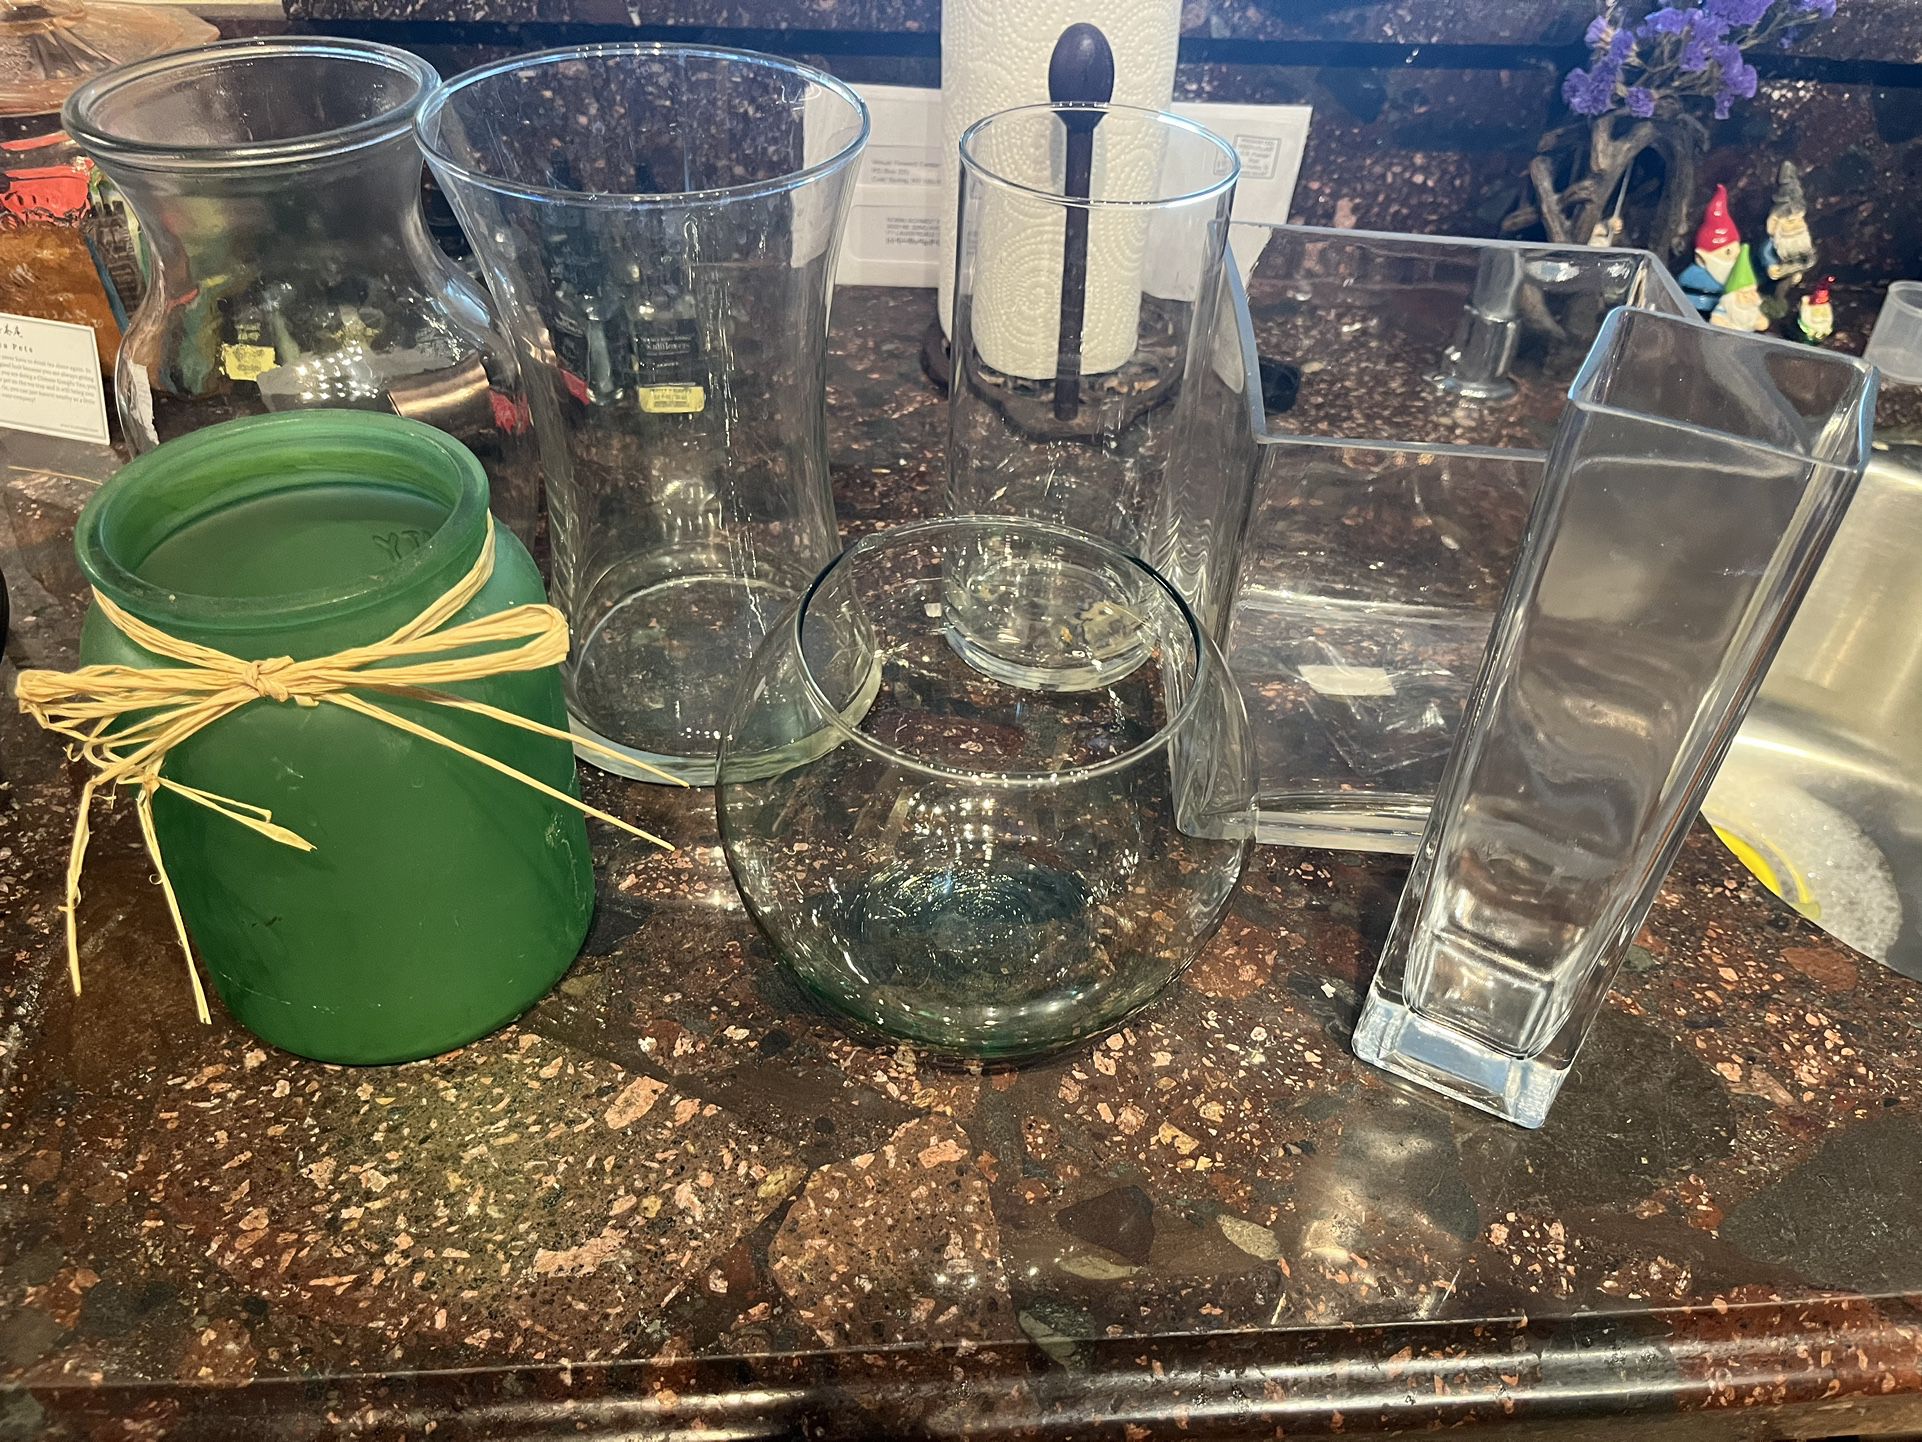 7 Glass Flower Vases 